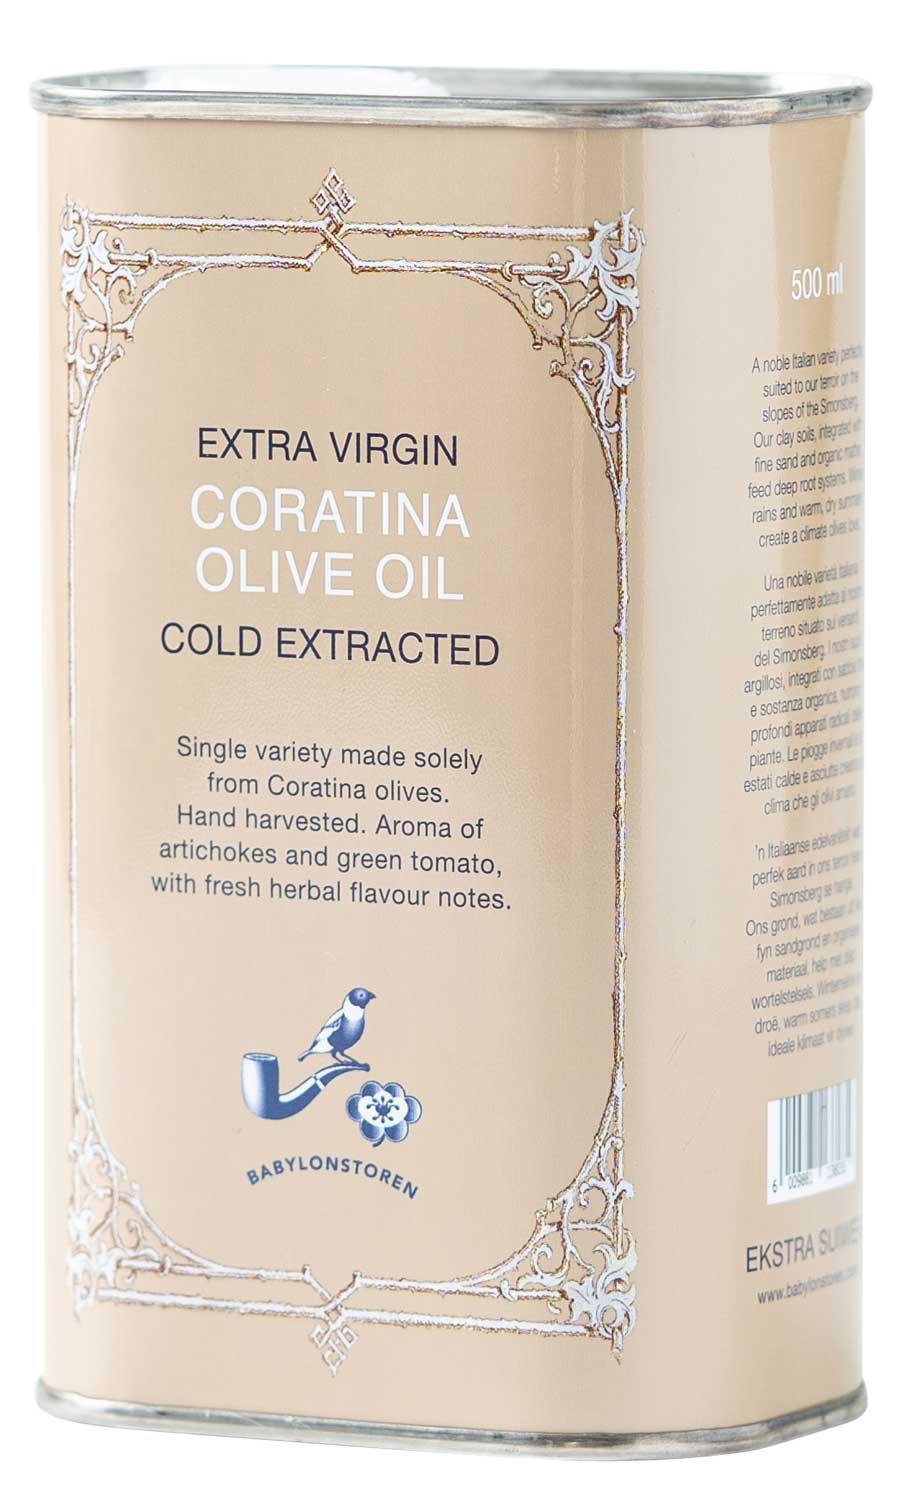 Babylonstoren Extra Virgin Olivenöl (Coratina)